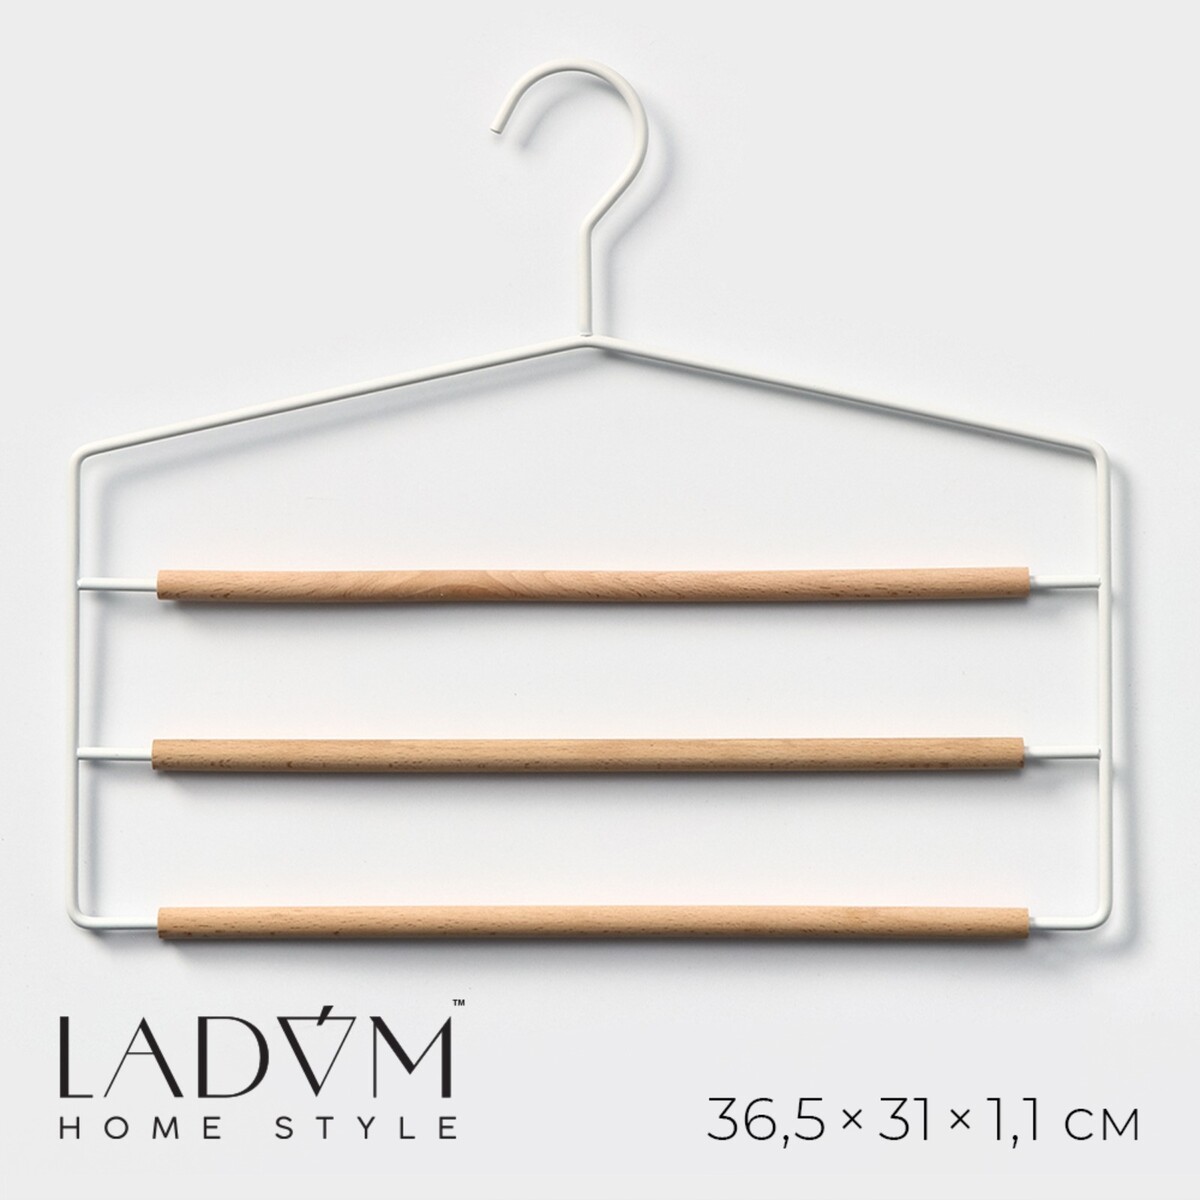 Плечики - вешалки оргазайзер для брюк и юбок ladо́m laconique, 36,5×31×1,1 см, цвет белый плечики вешалка для одежды ladо́m laconique 41 5×22 5×1 см розовый